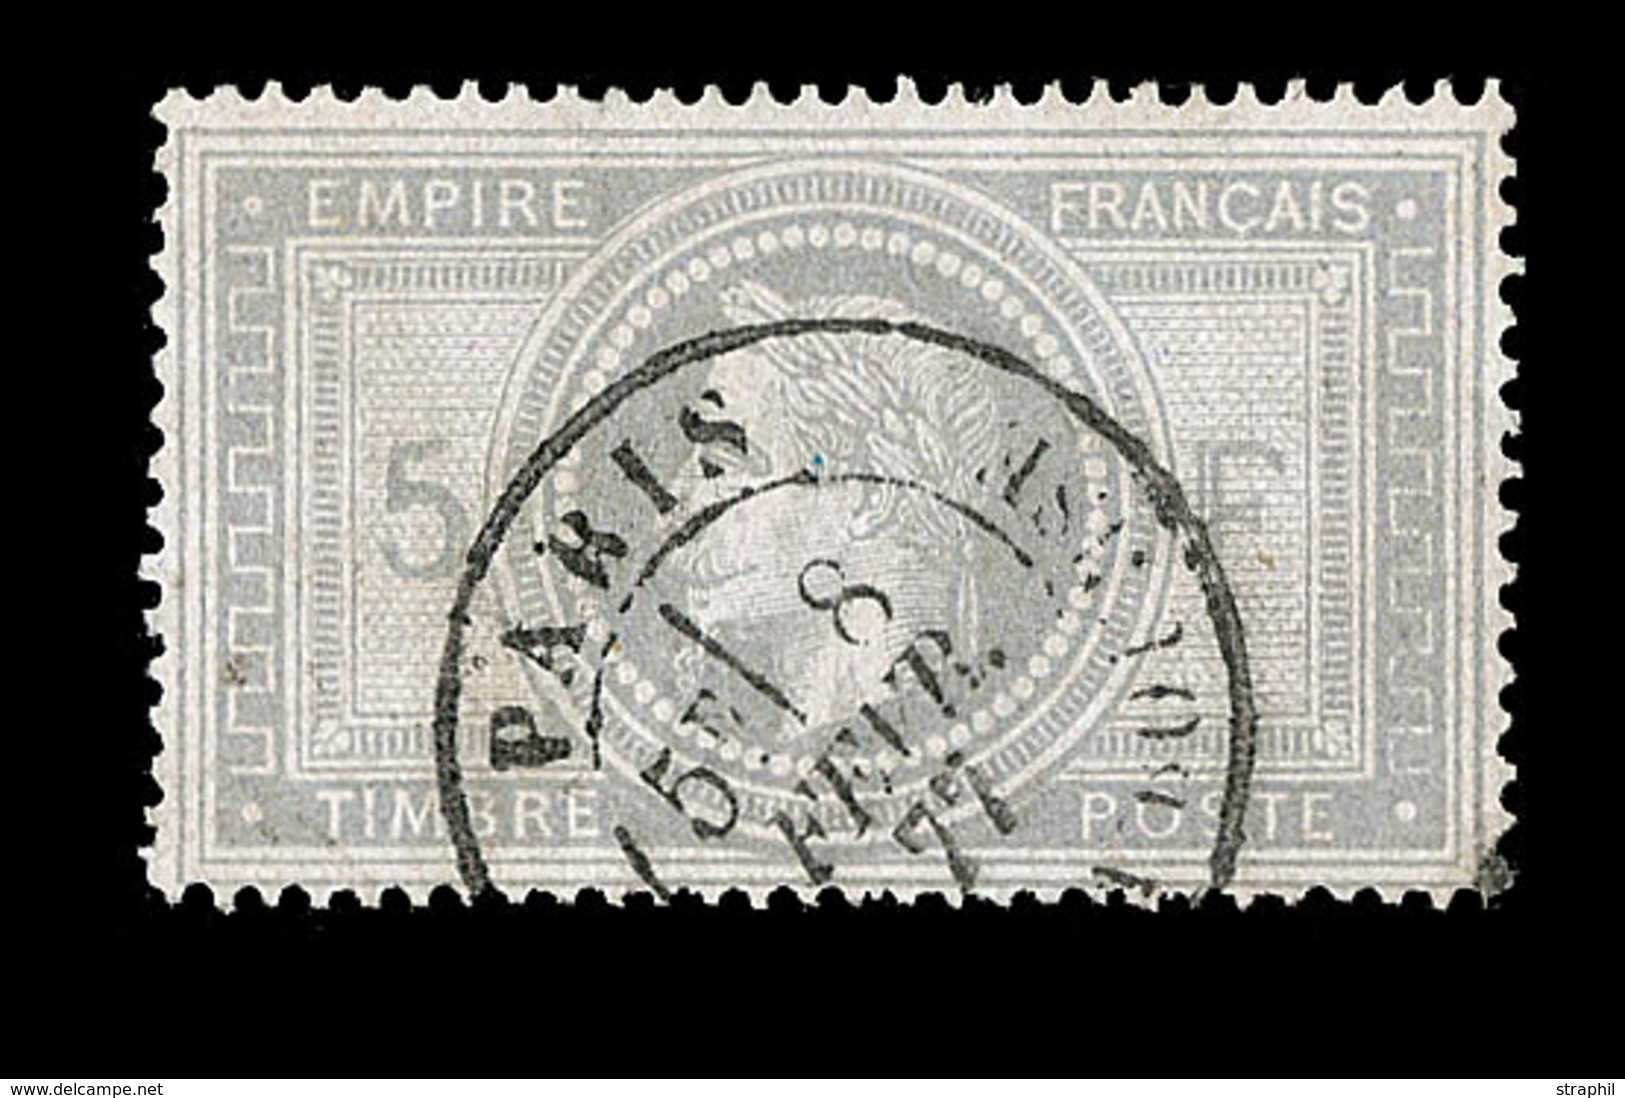 O NAPOLEON LAURE - O - N°33 - Obl. Càd T18 Paris - TB - 1863-1870 Napoleon III With Laurels